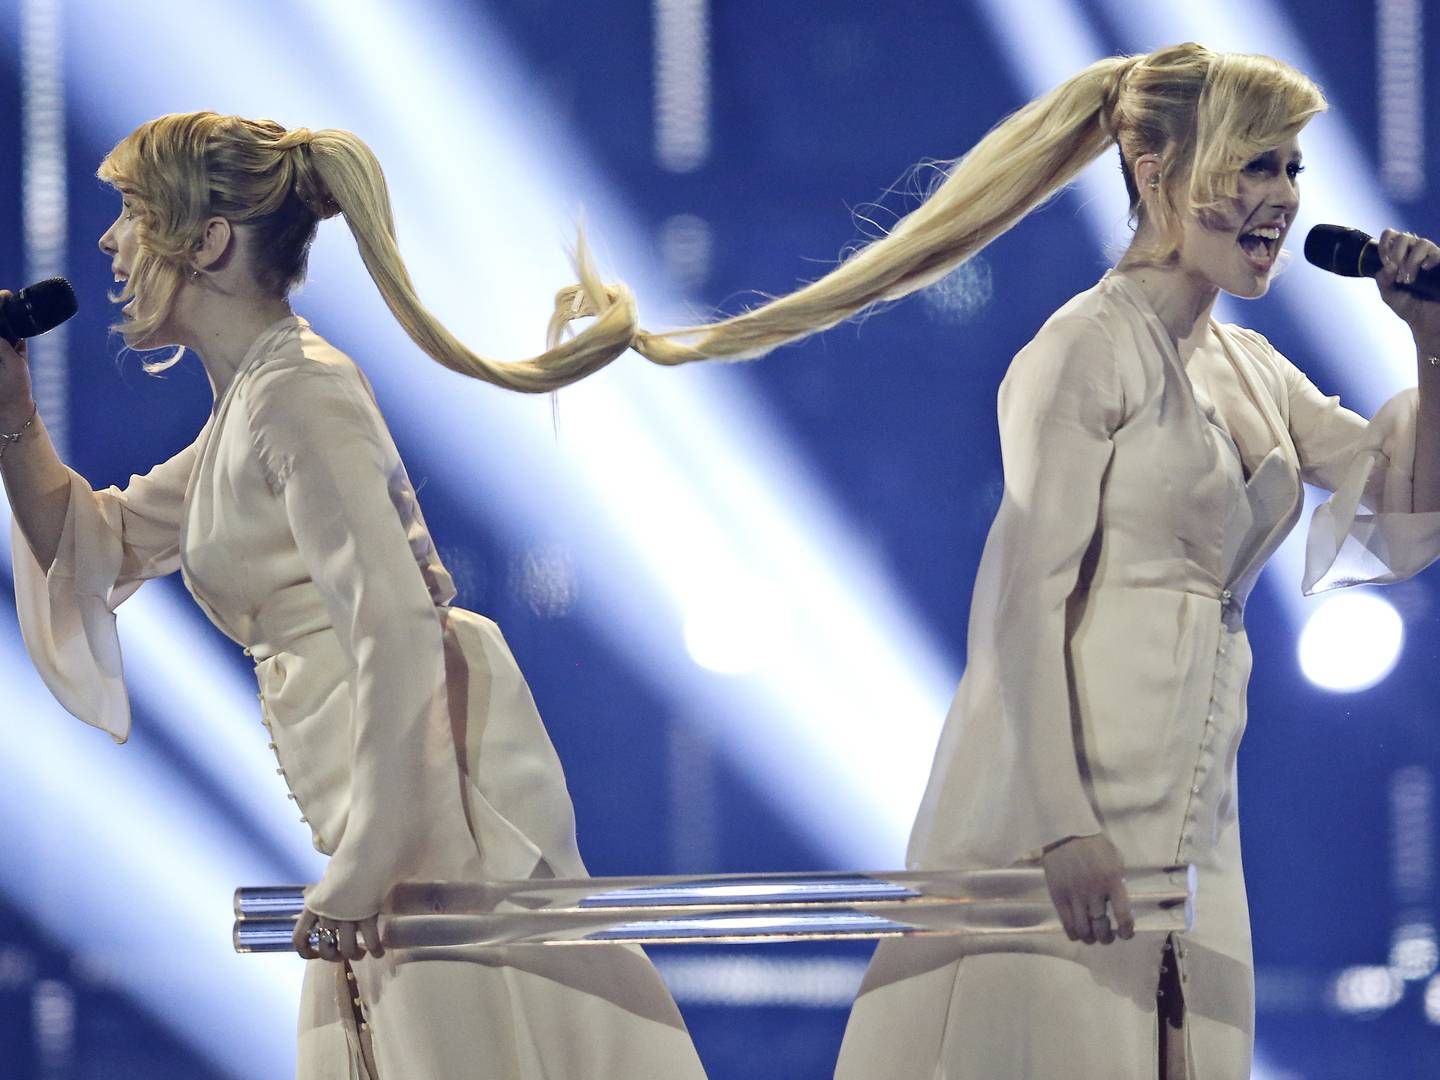 De russiske Eurovision-deltagere i 2014, Tolmachevy-tvillingerne. | Foto: Jens Dresling